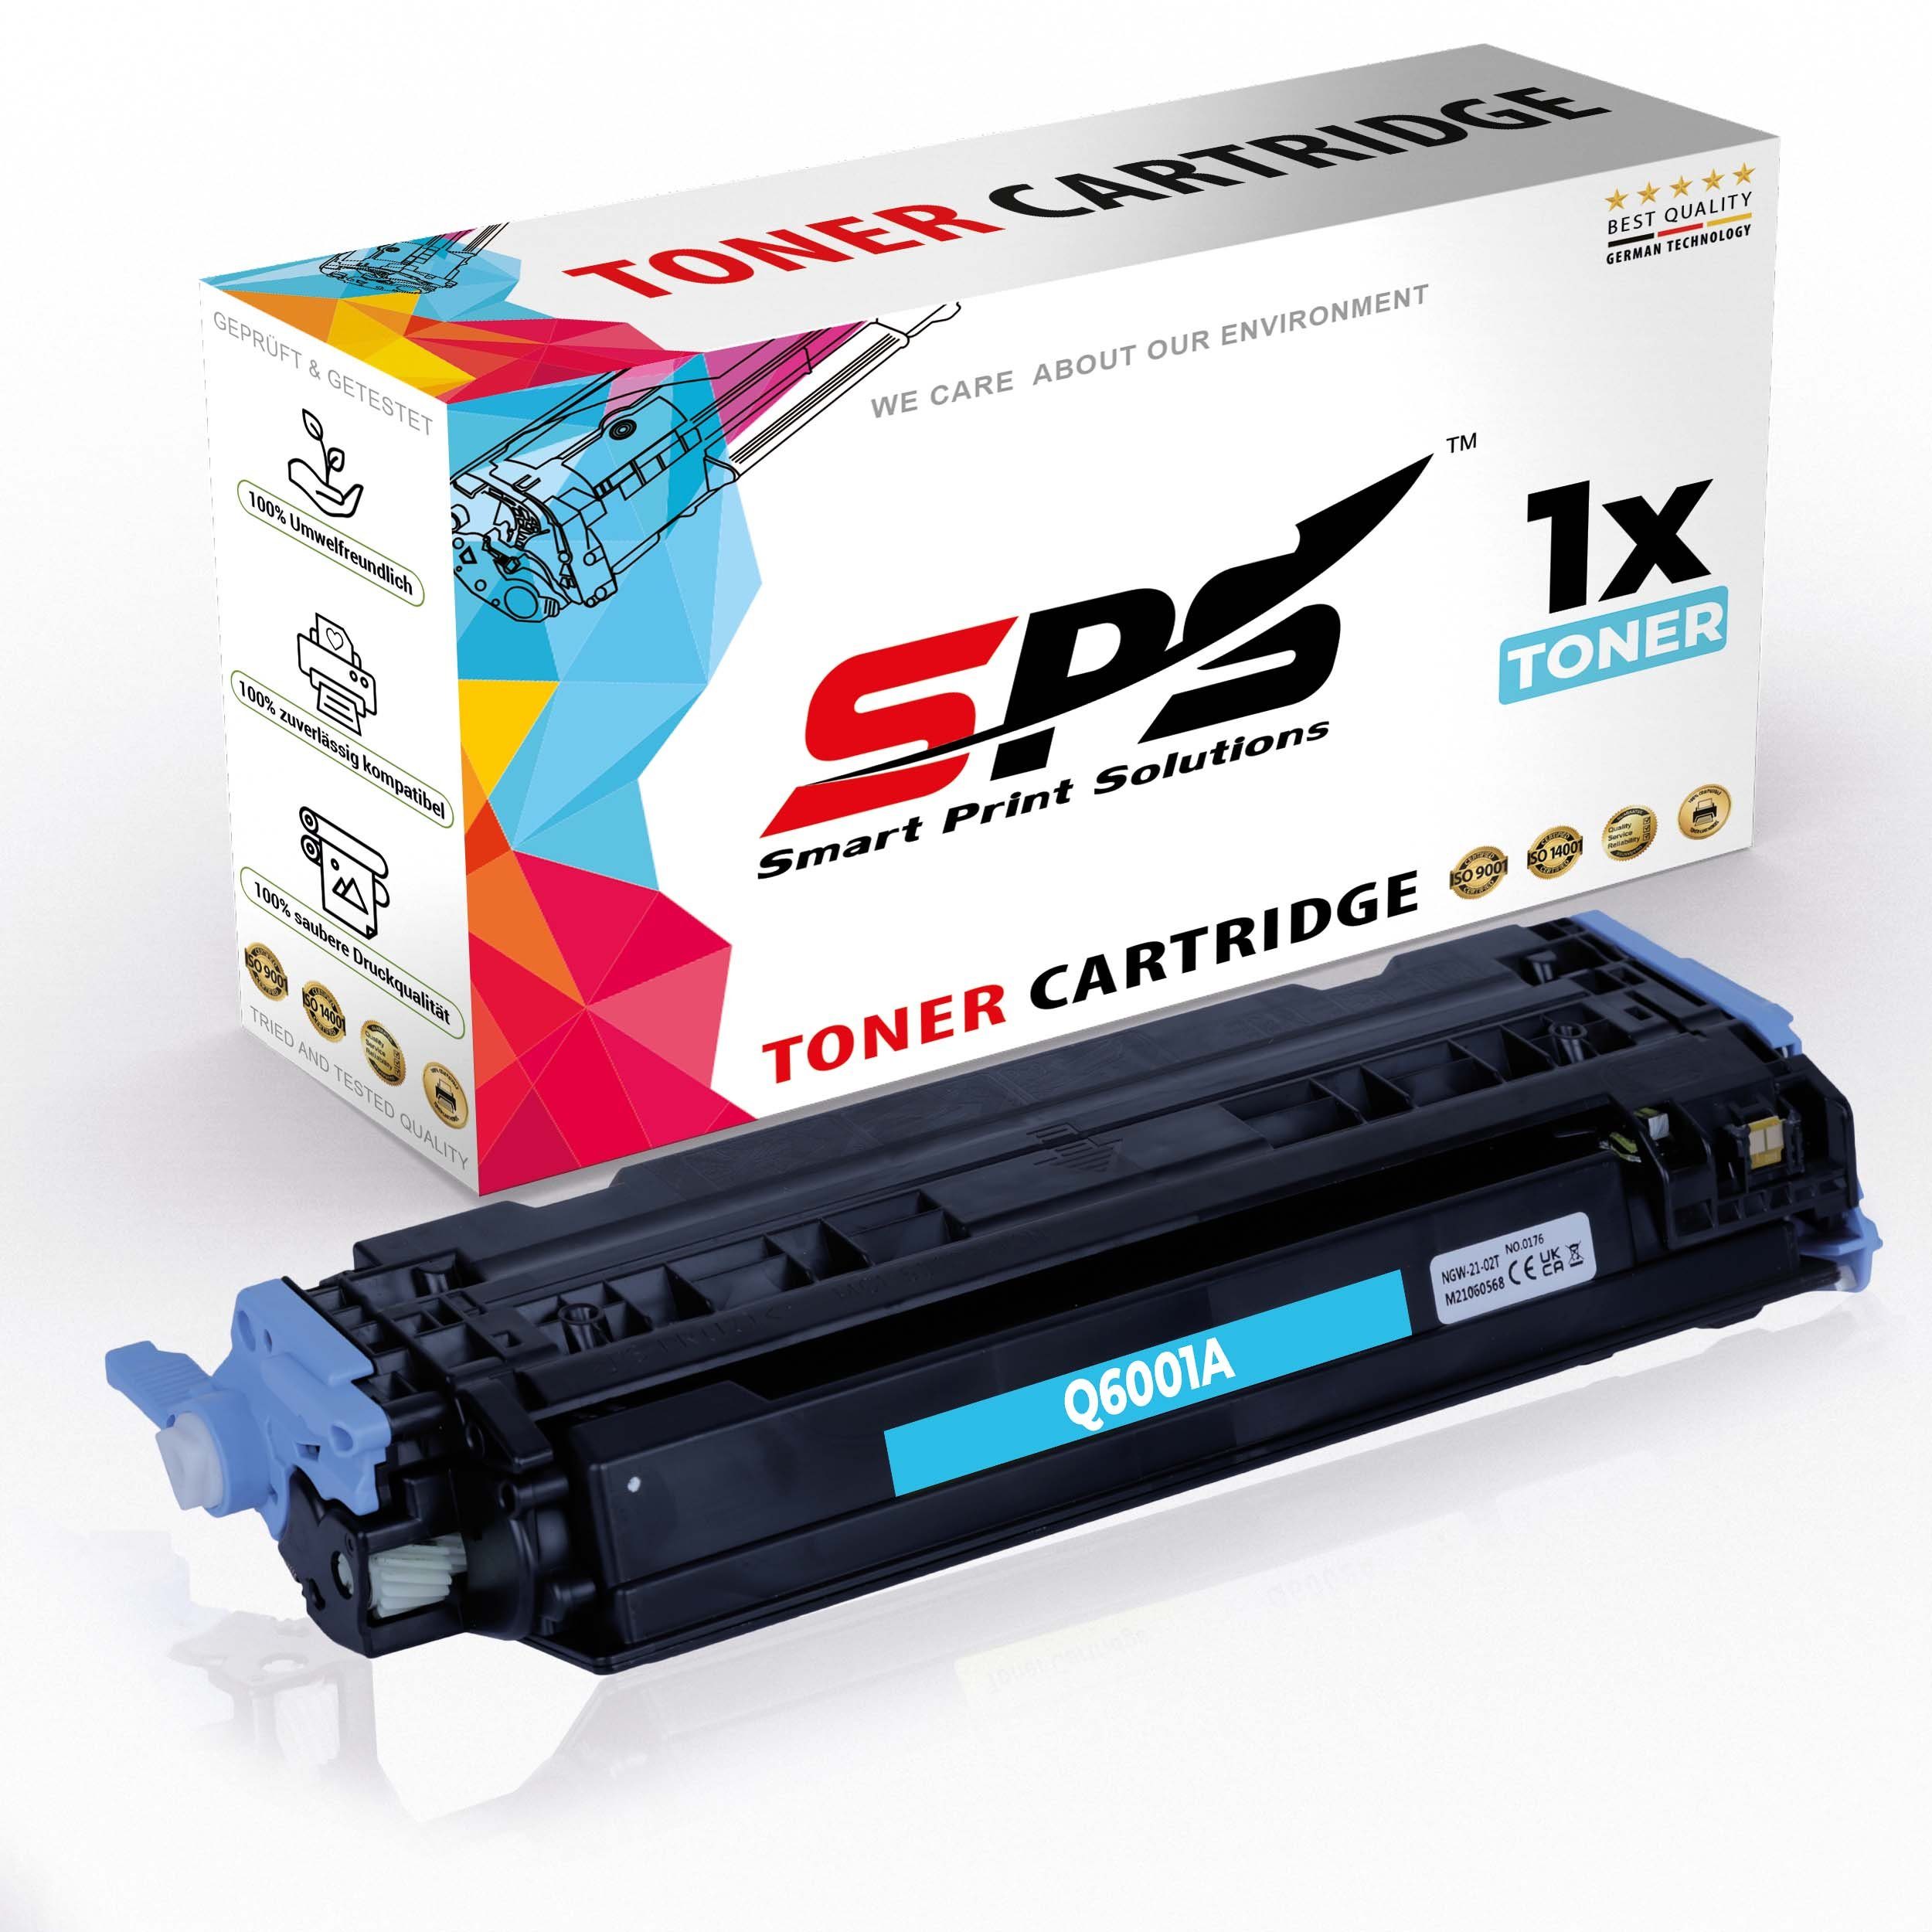 Pack, SPS 124A x) Color Nachfülltinte CM1015 (für Laserjet für HP 1er MFP HP, Kompatibel